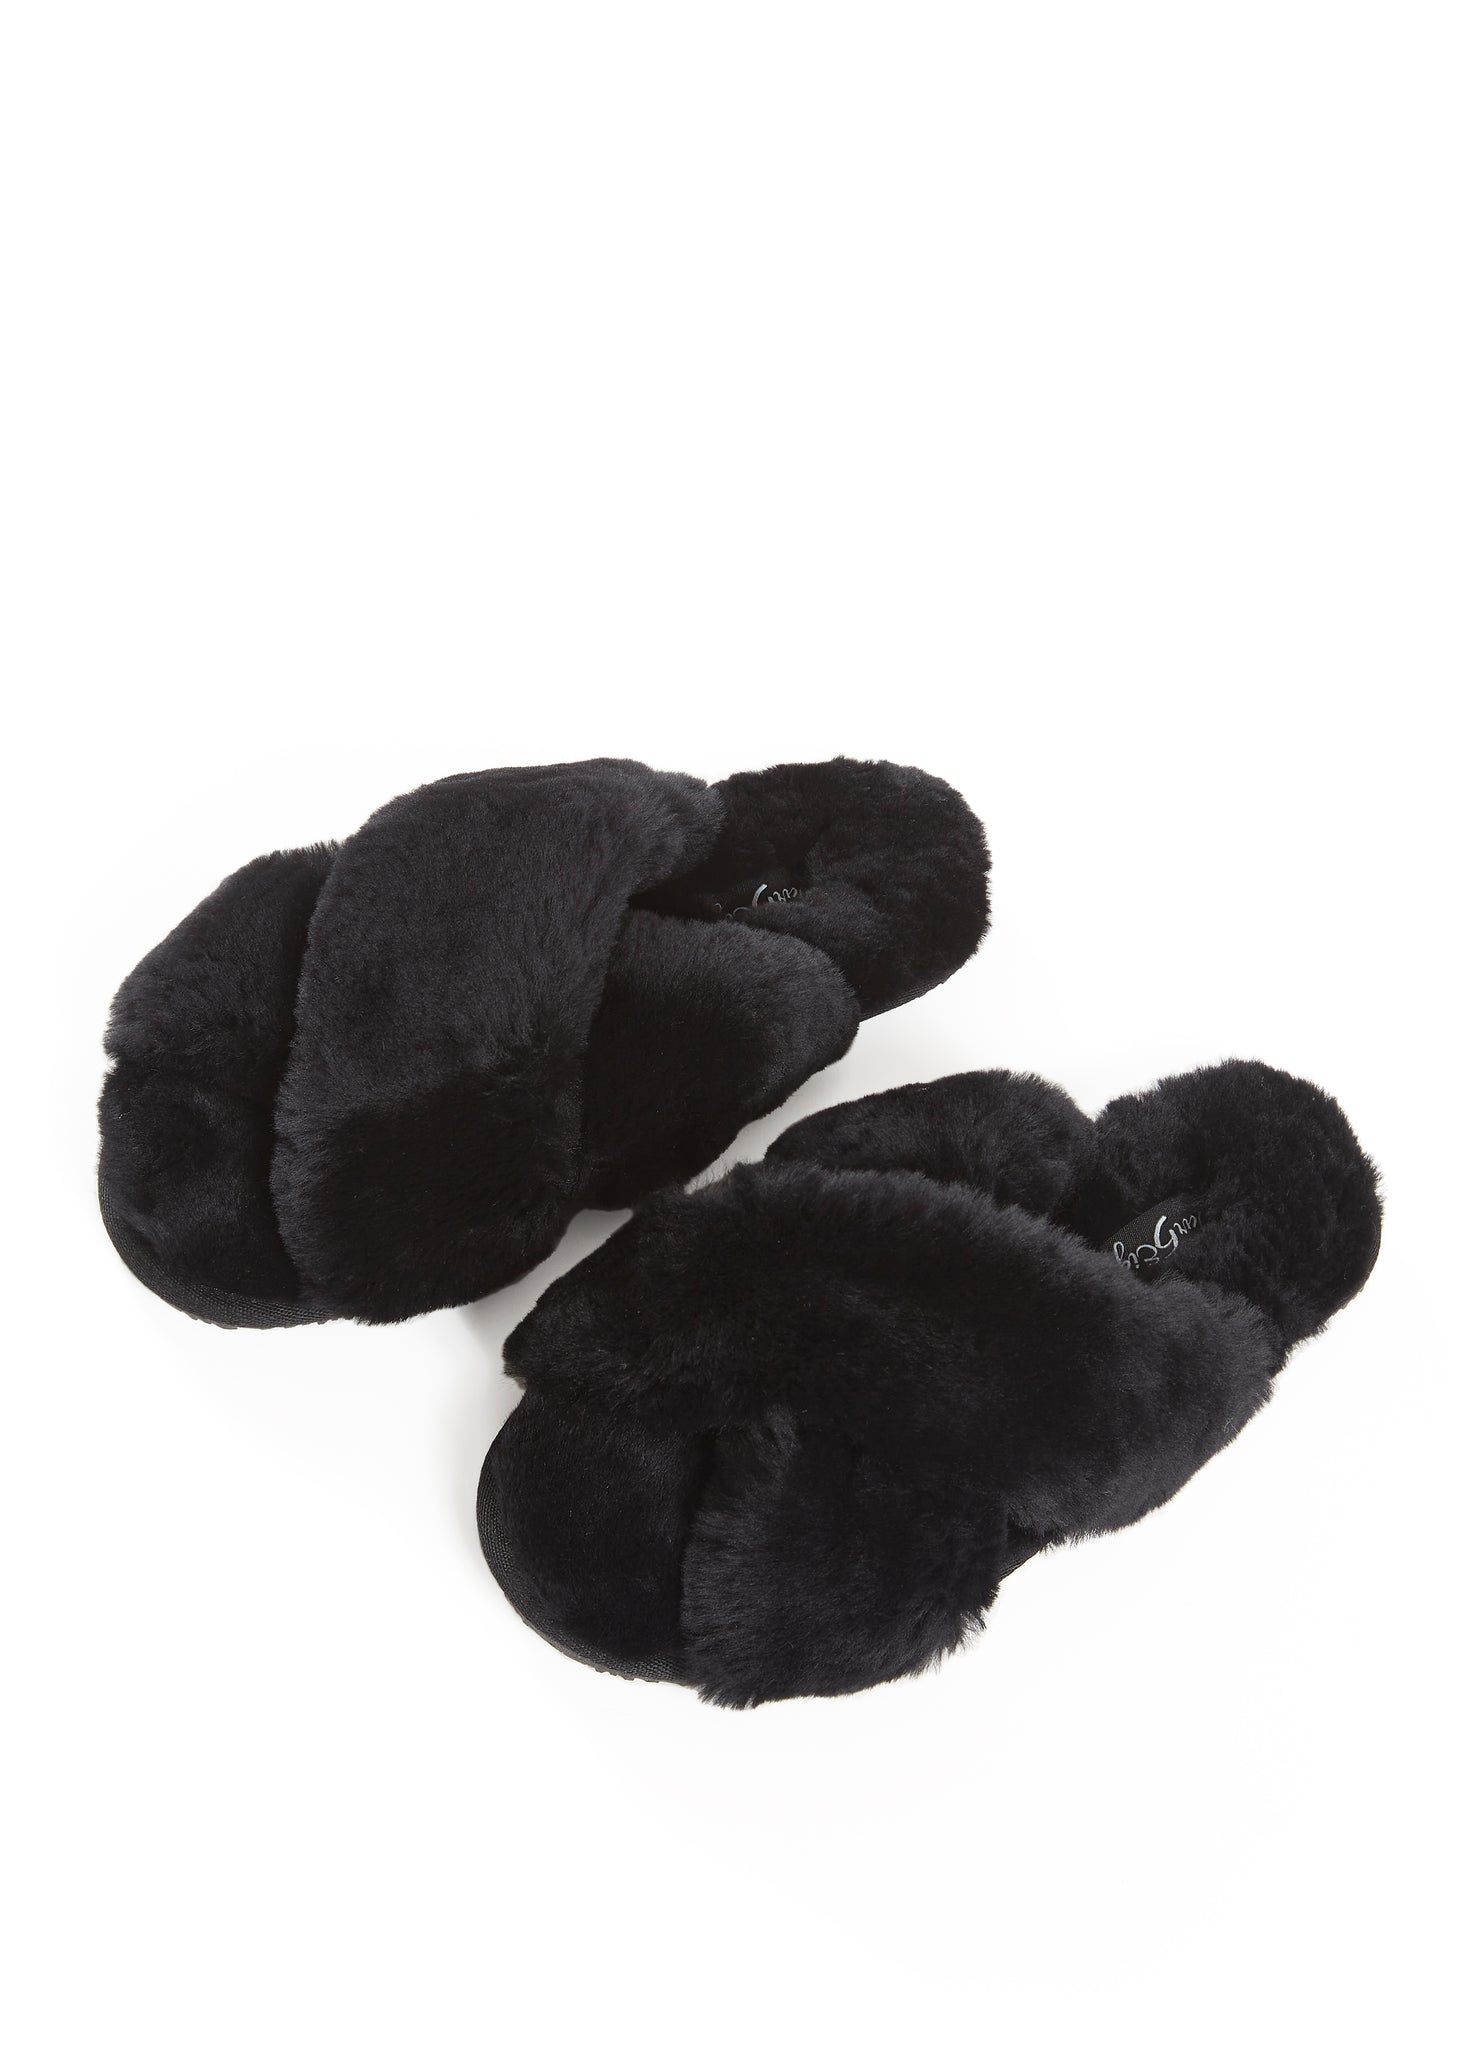 Black Criss Cross Luxury Sheepskin Slippers - Jessimara